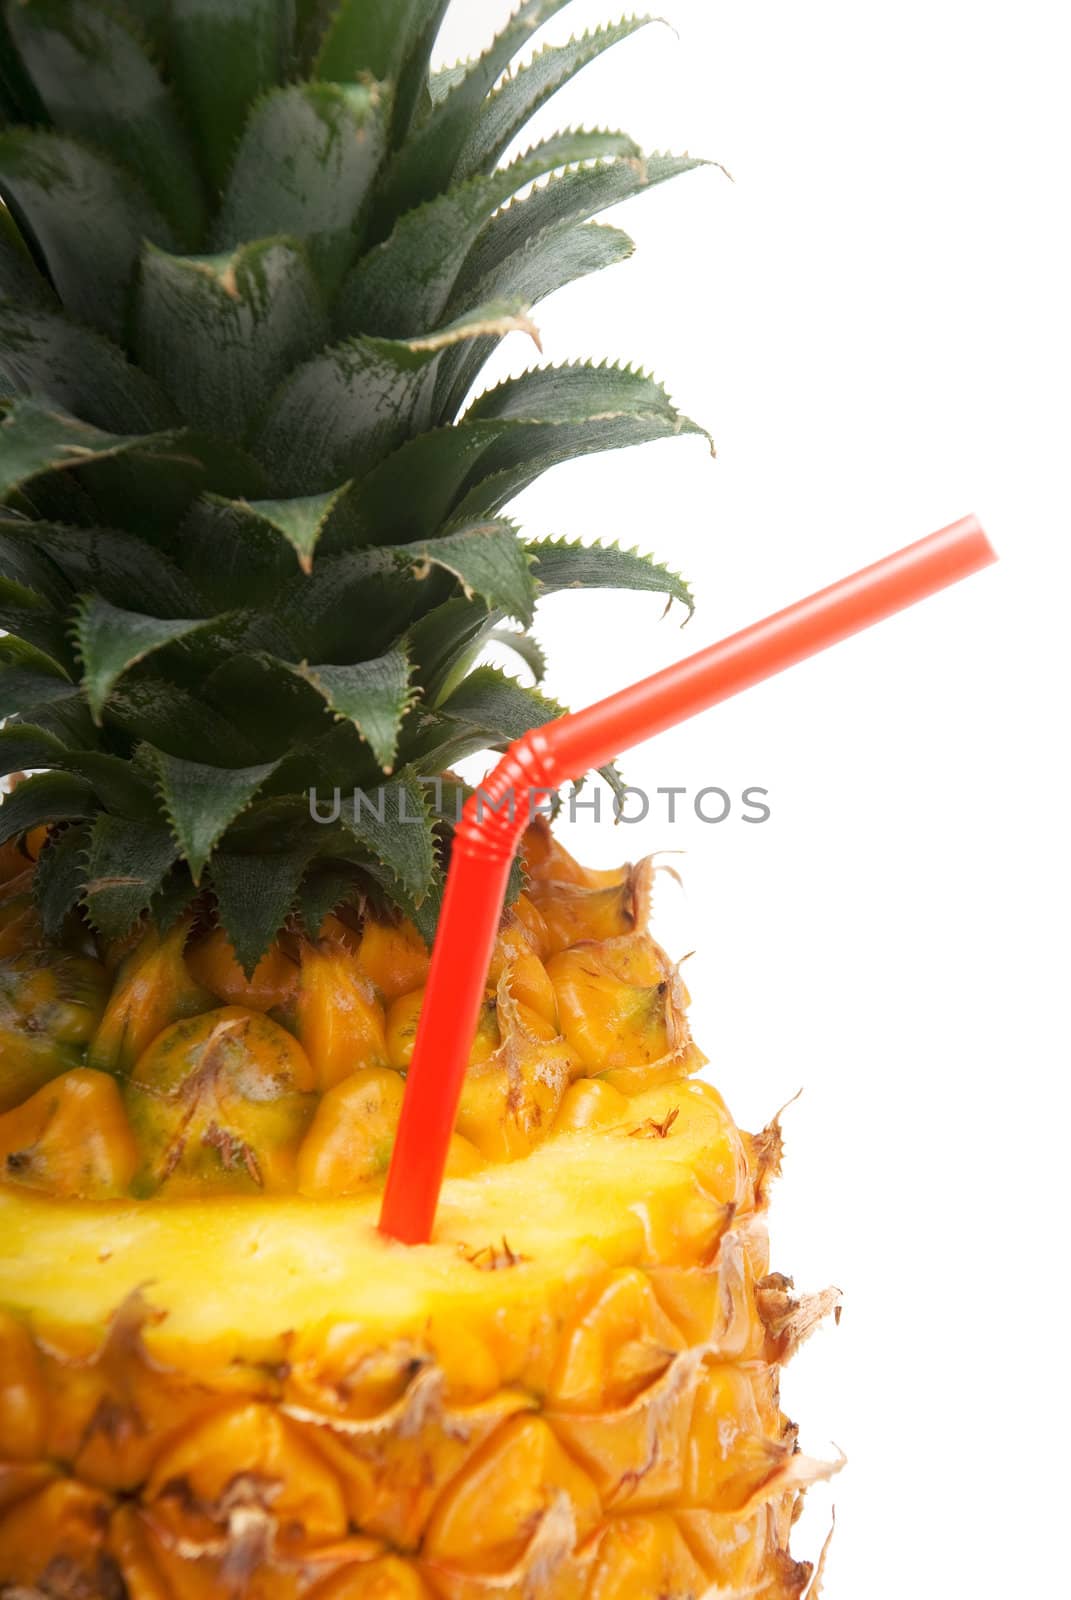 pineapple drink by keko64